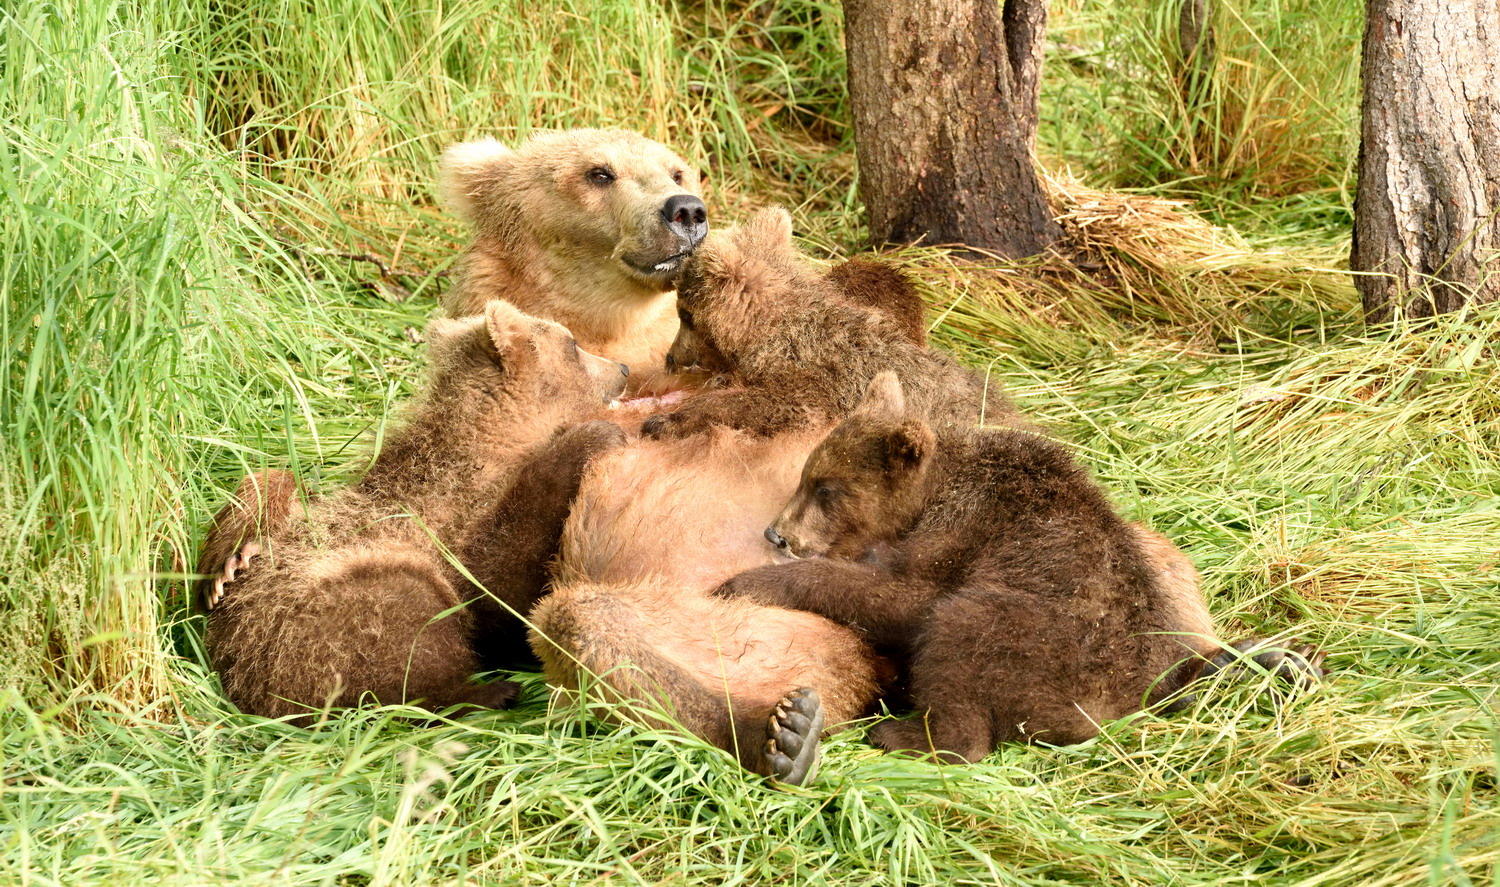 DSC_4110_1A1 - Nursing the Cubs